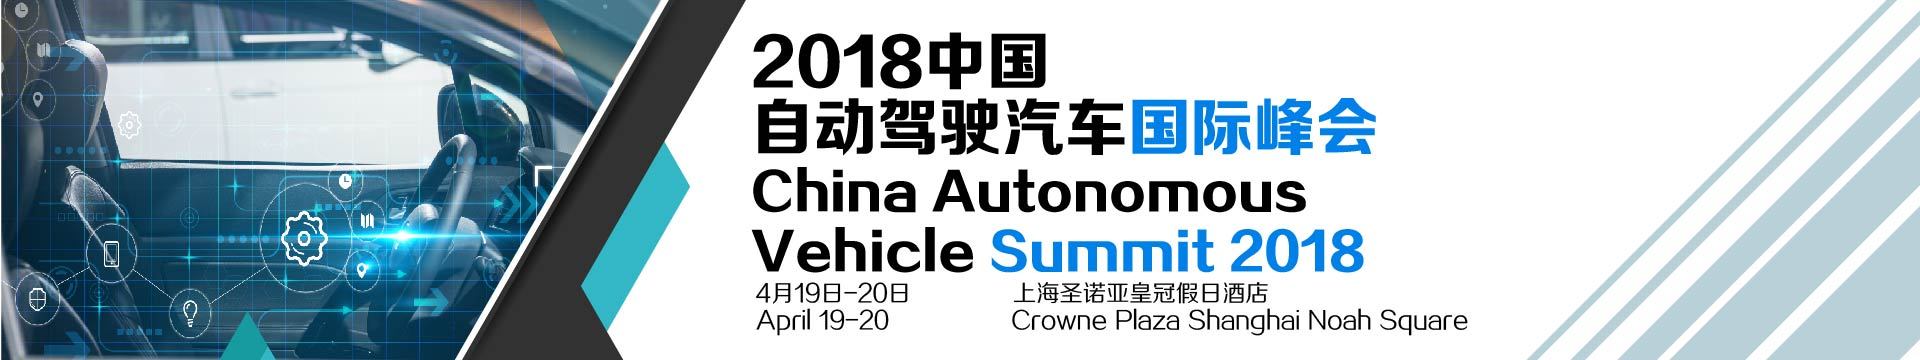 2018中国自动驾驶汽车国际峰会